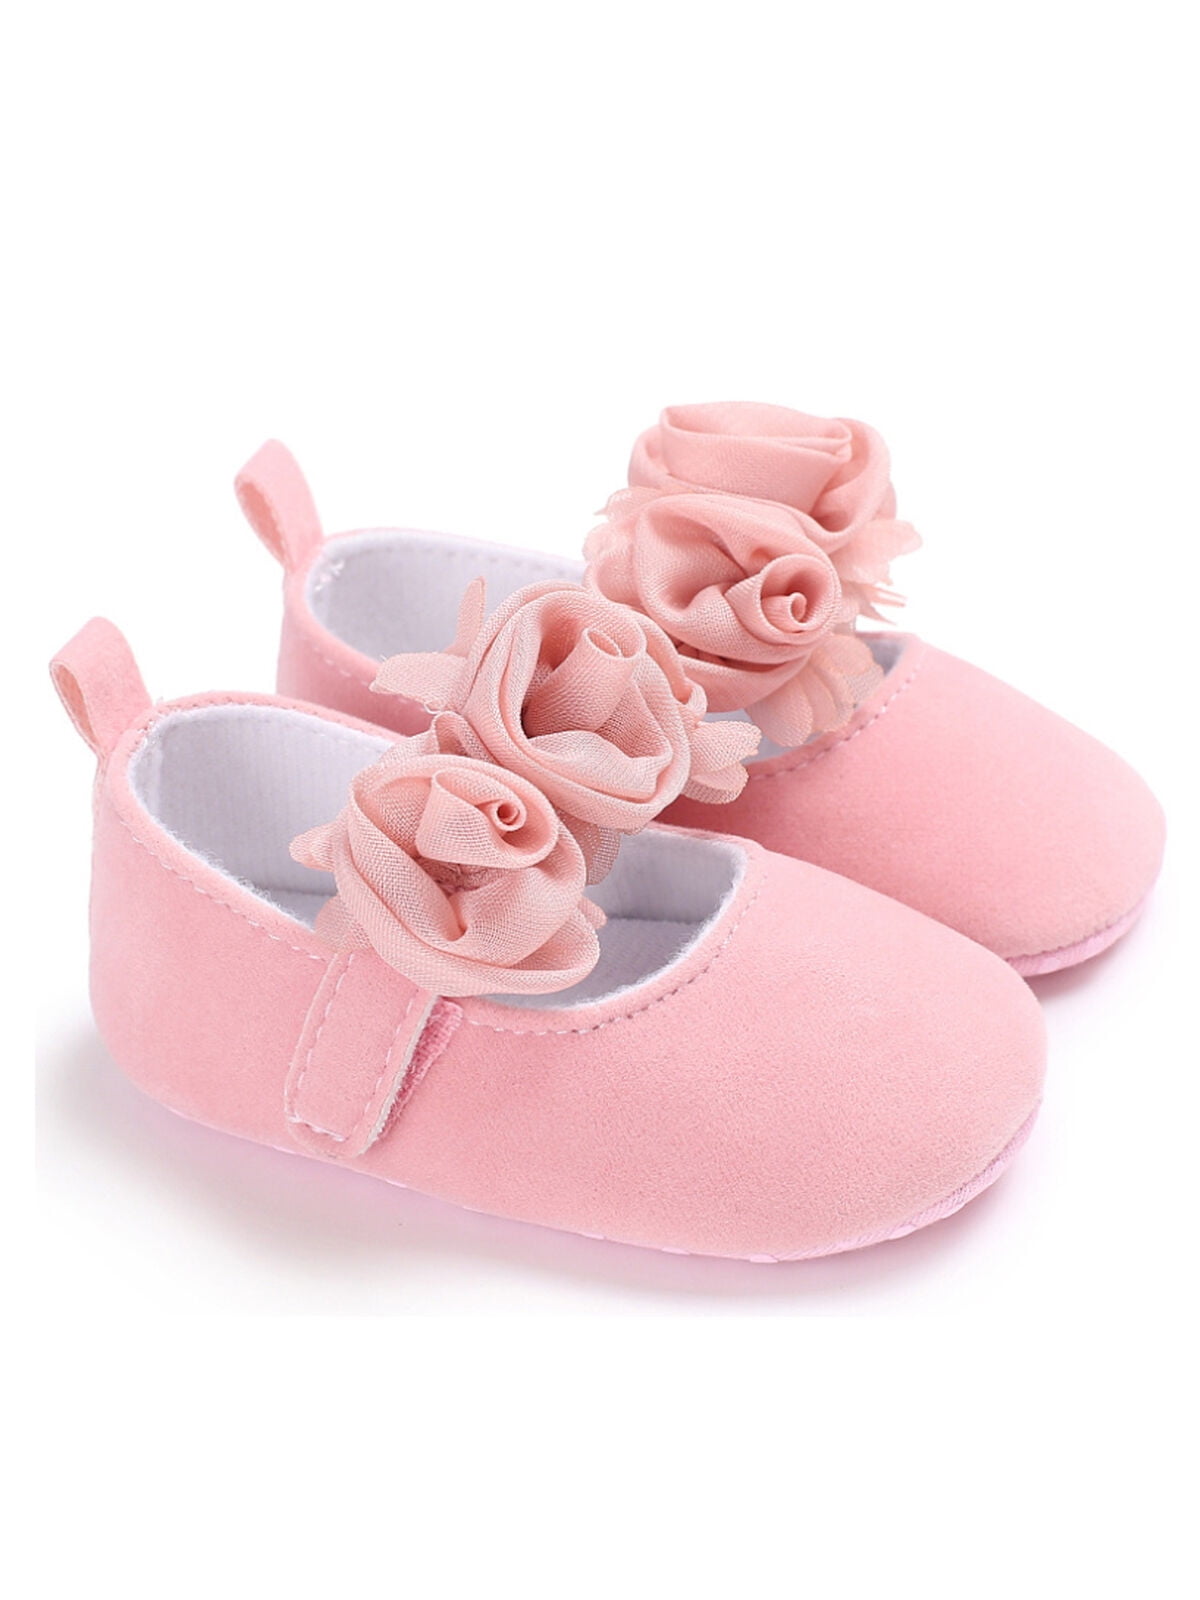 infant dress shoes girl